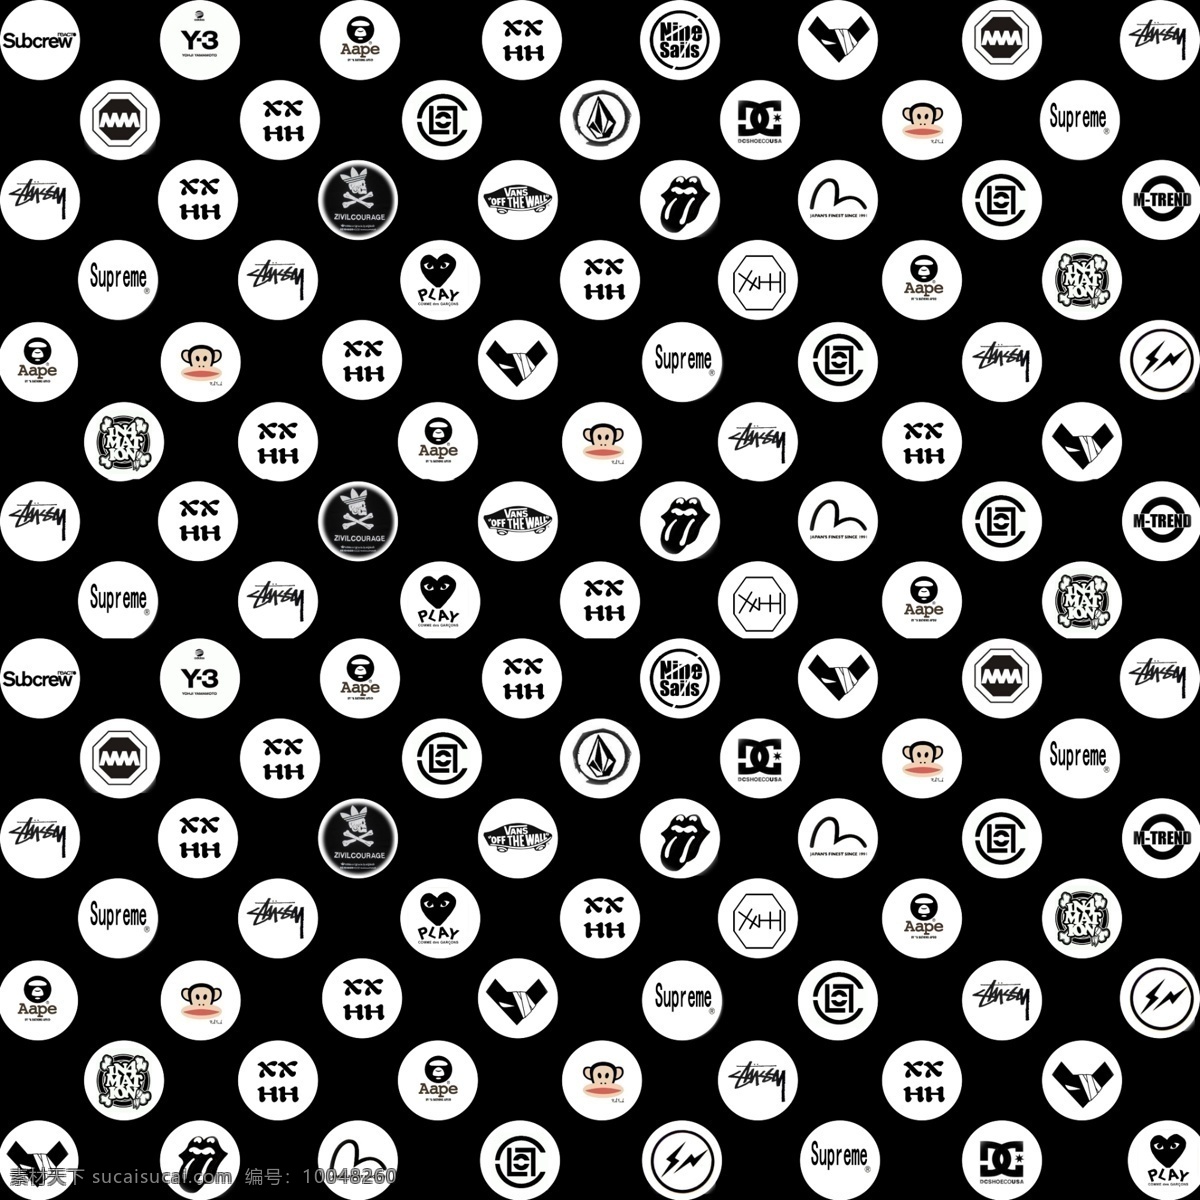 logo 背景 壁纸 标志设计 服装店背景 广告设计模板 嘻哈 潮 牌 模板下载 源文件 psd源文件 logo设计